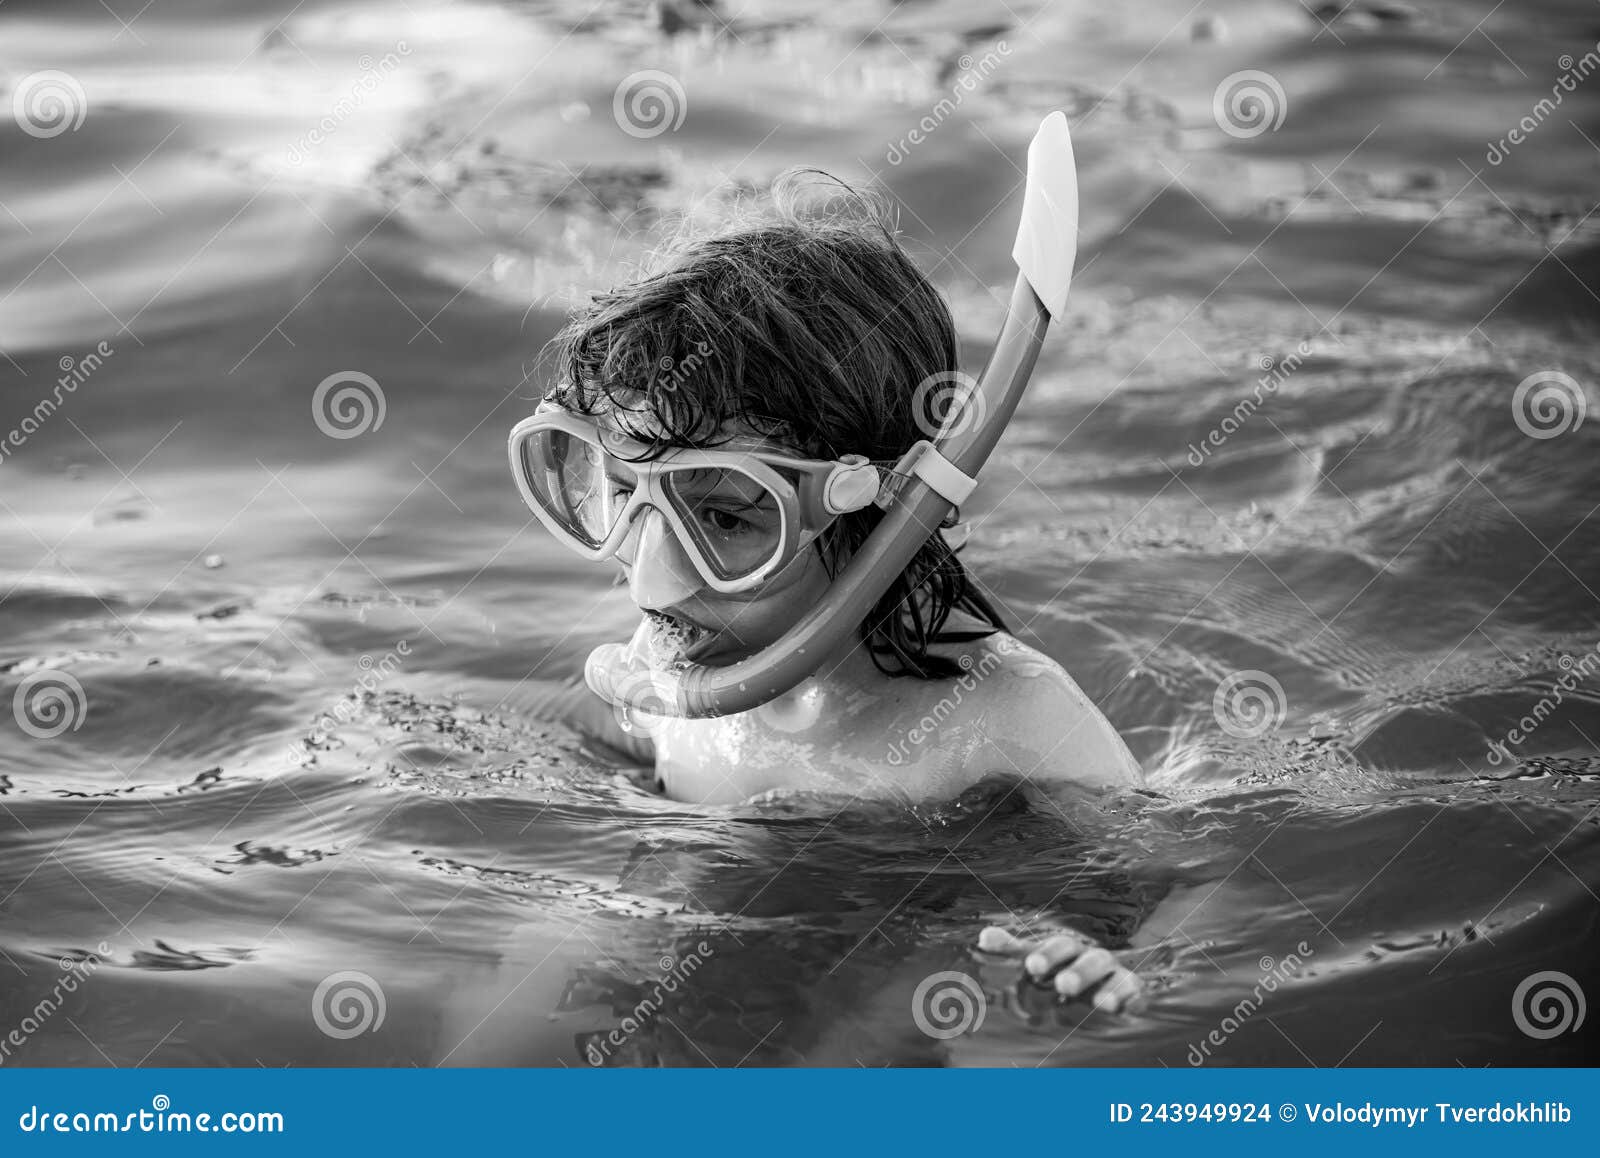 Enfant S'usant Un Masque De Plongée Image stock - Image du sain